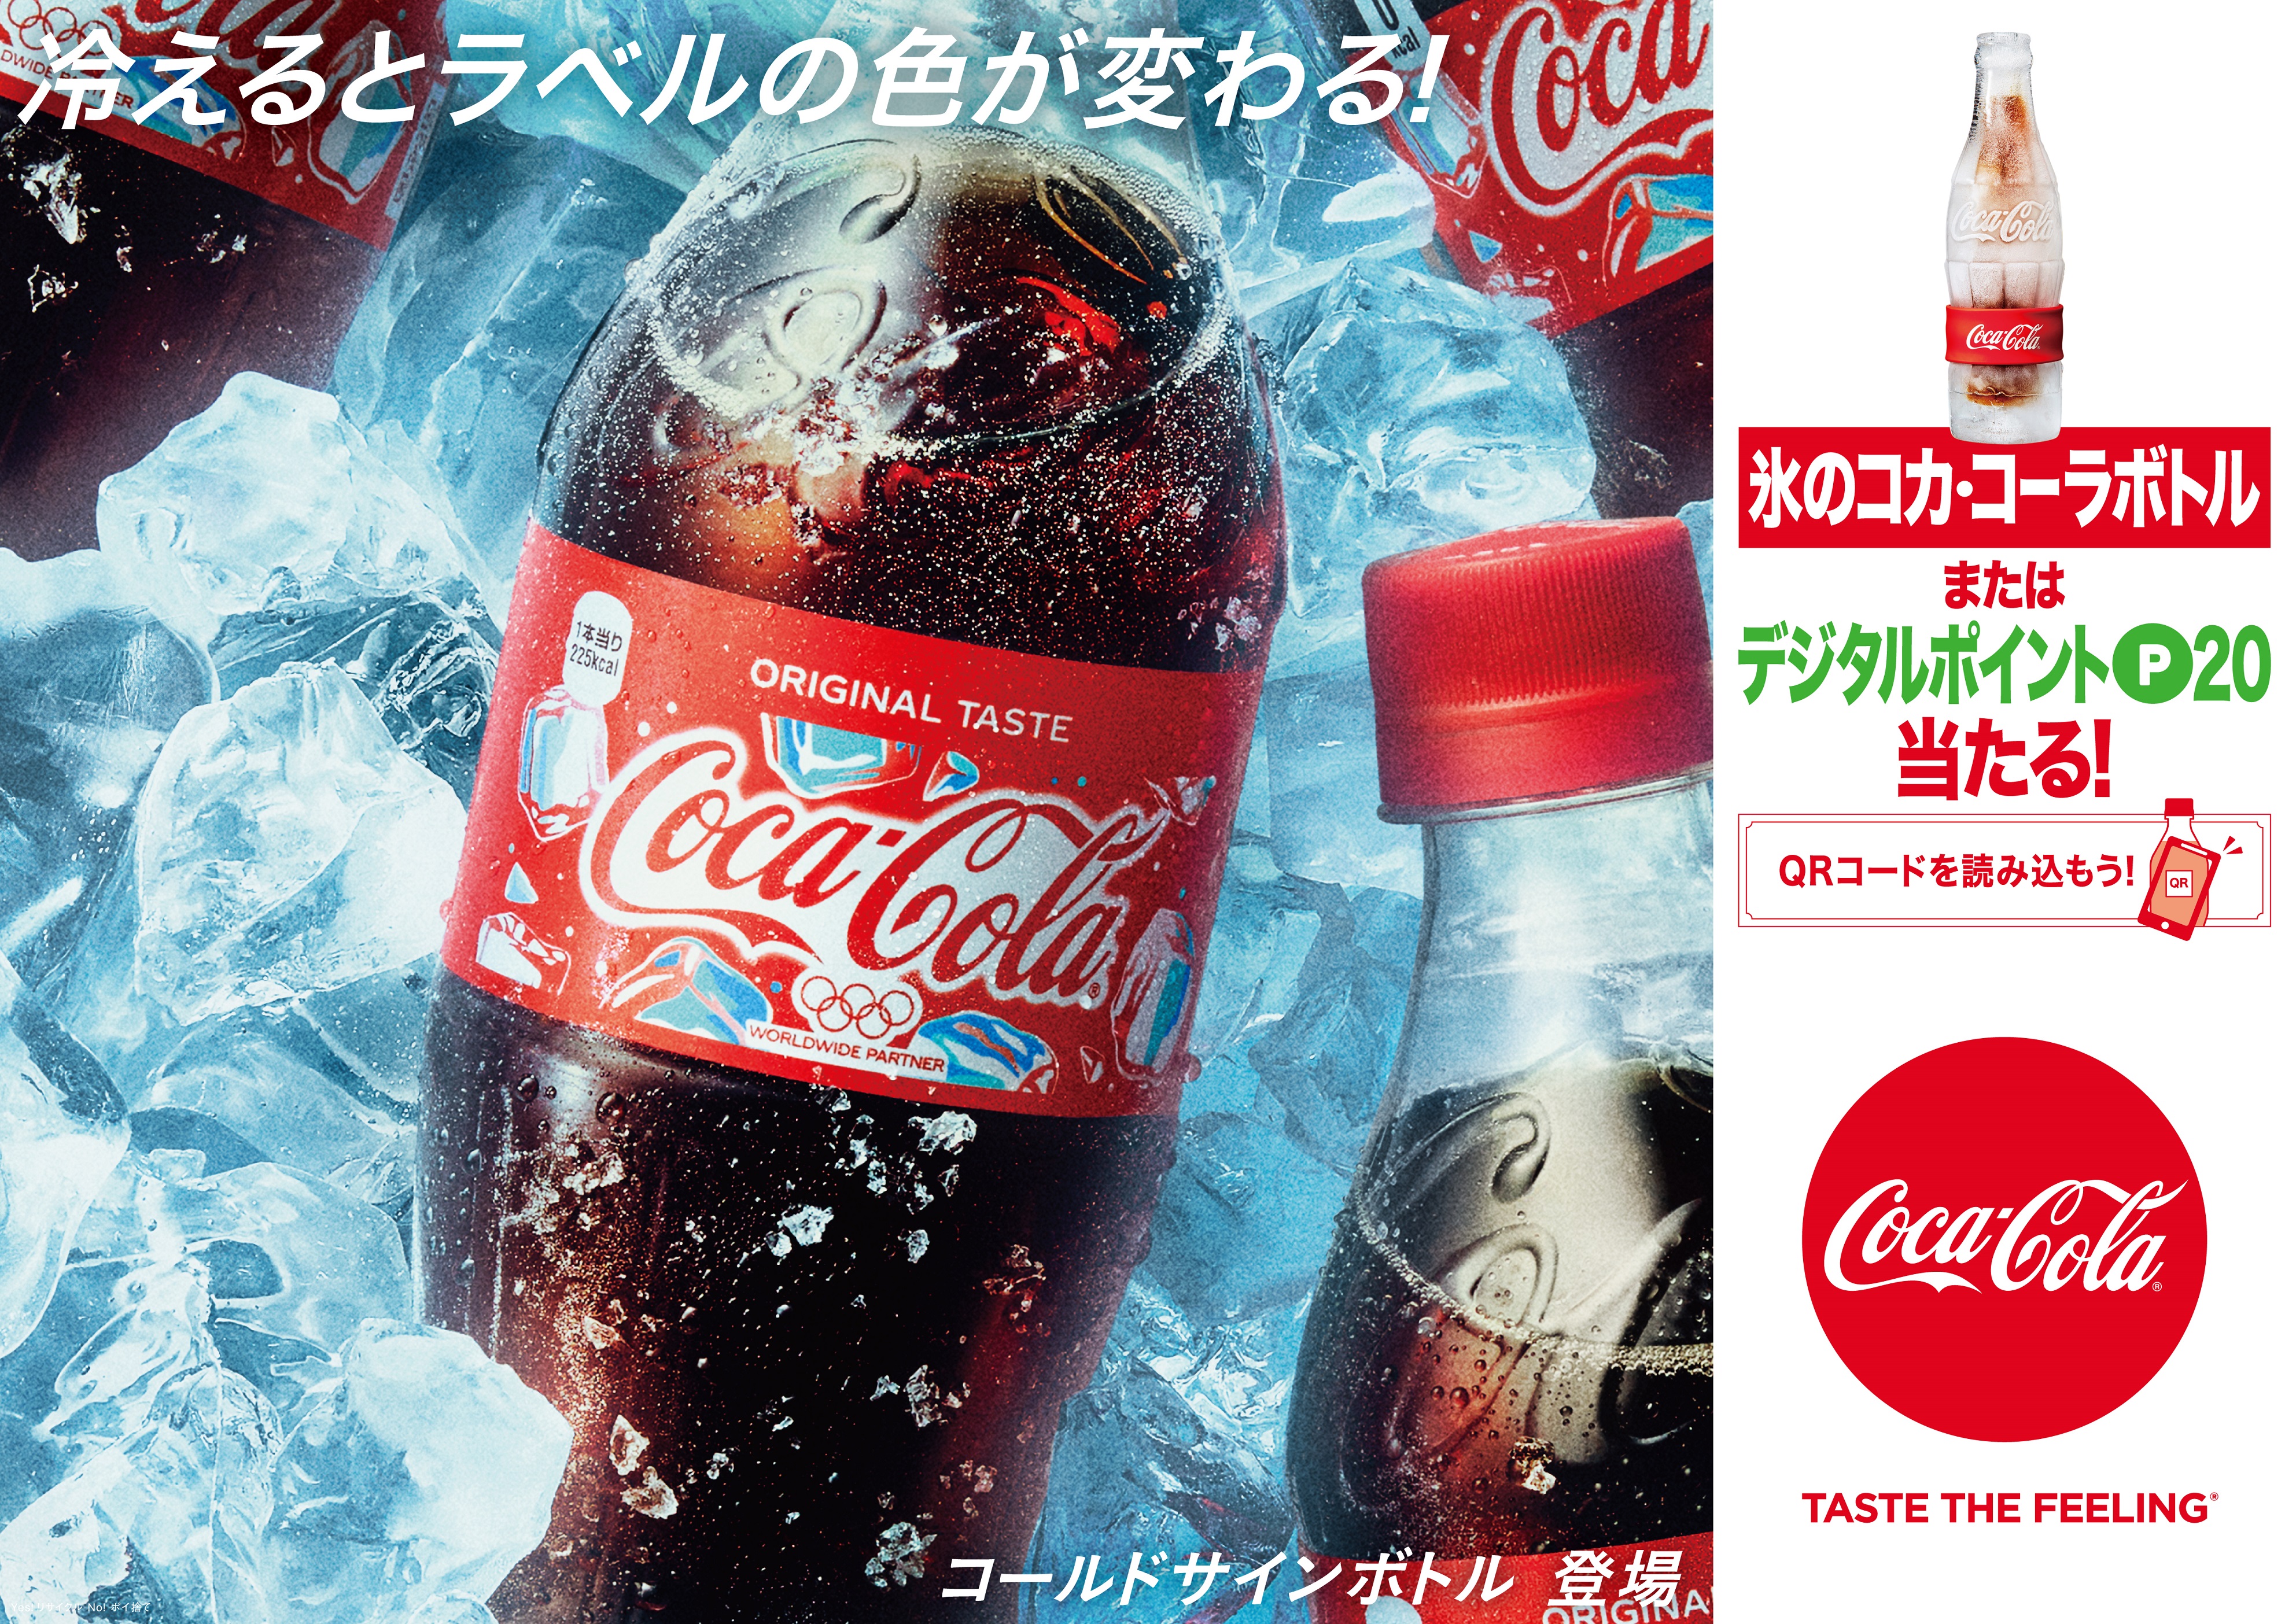 東京2020オリンピック開幕一年前となる コカ コーラ サマーキャンペーン 冷やすとラベルの色が変わる コカ コーラ コカ コーラ ゼロ コールドサインデザイン6月17日 月 から期間限定発売 日本コカ コーラ株式会社のプレスリリース